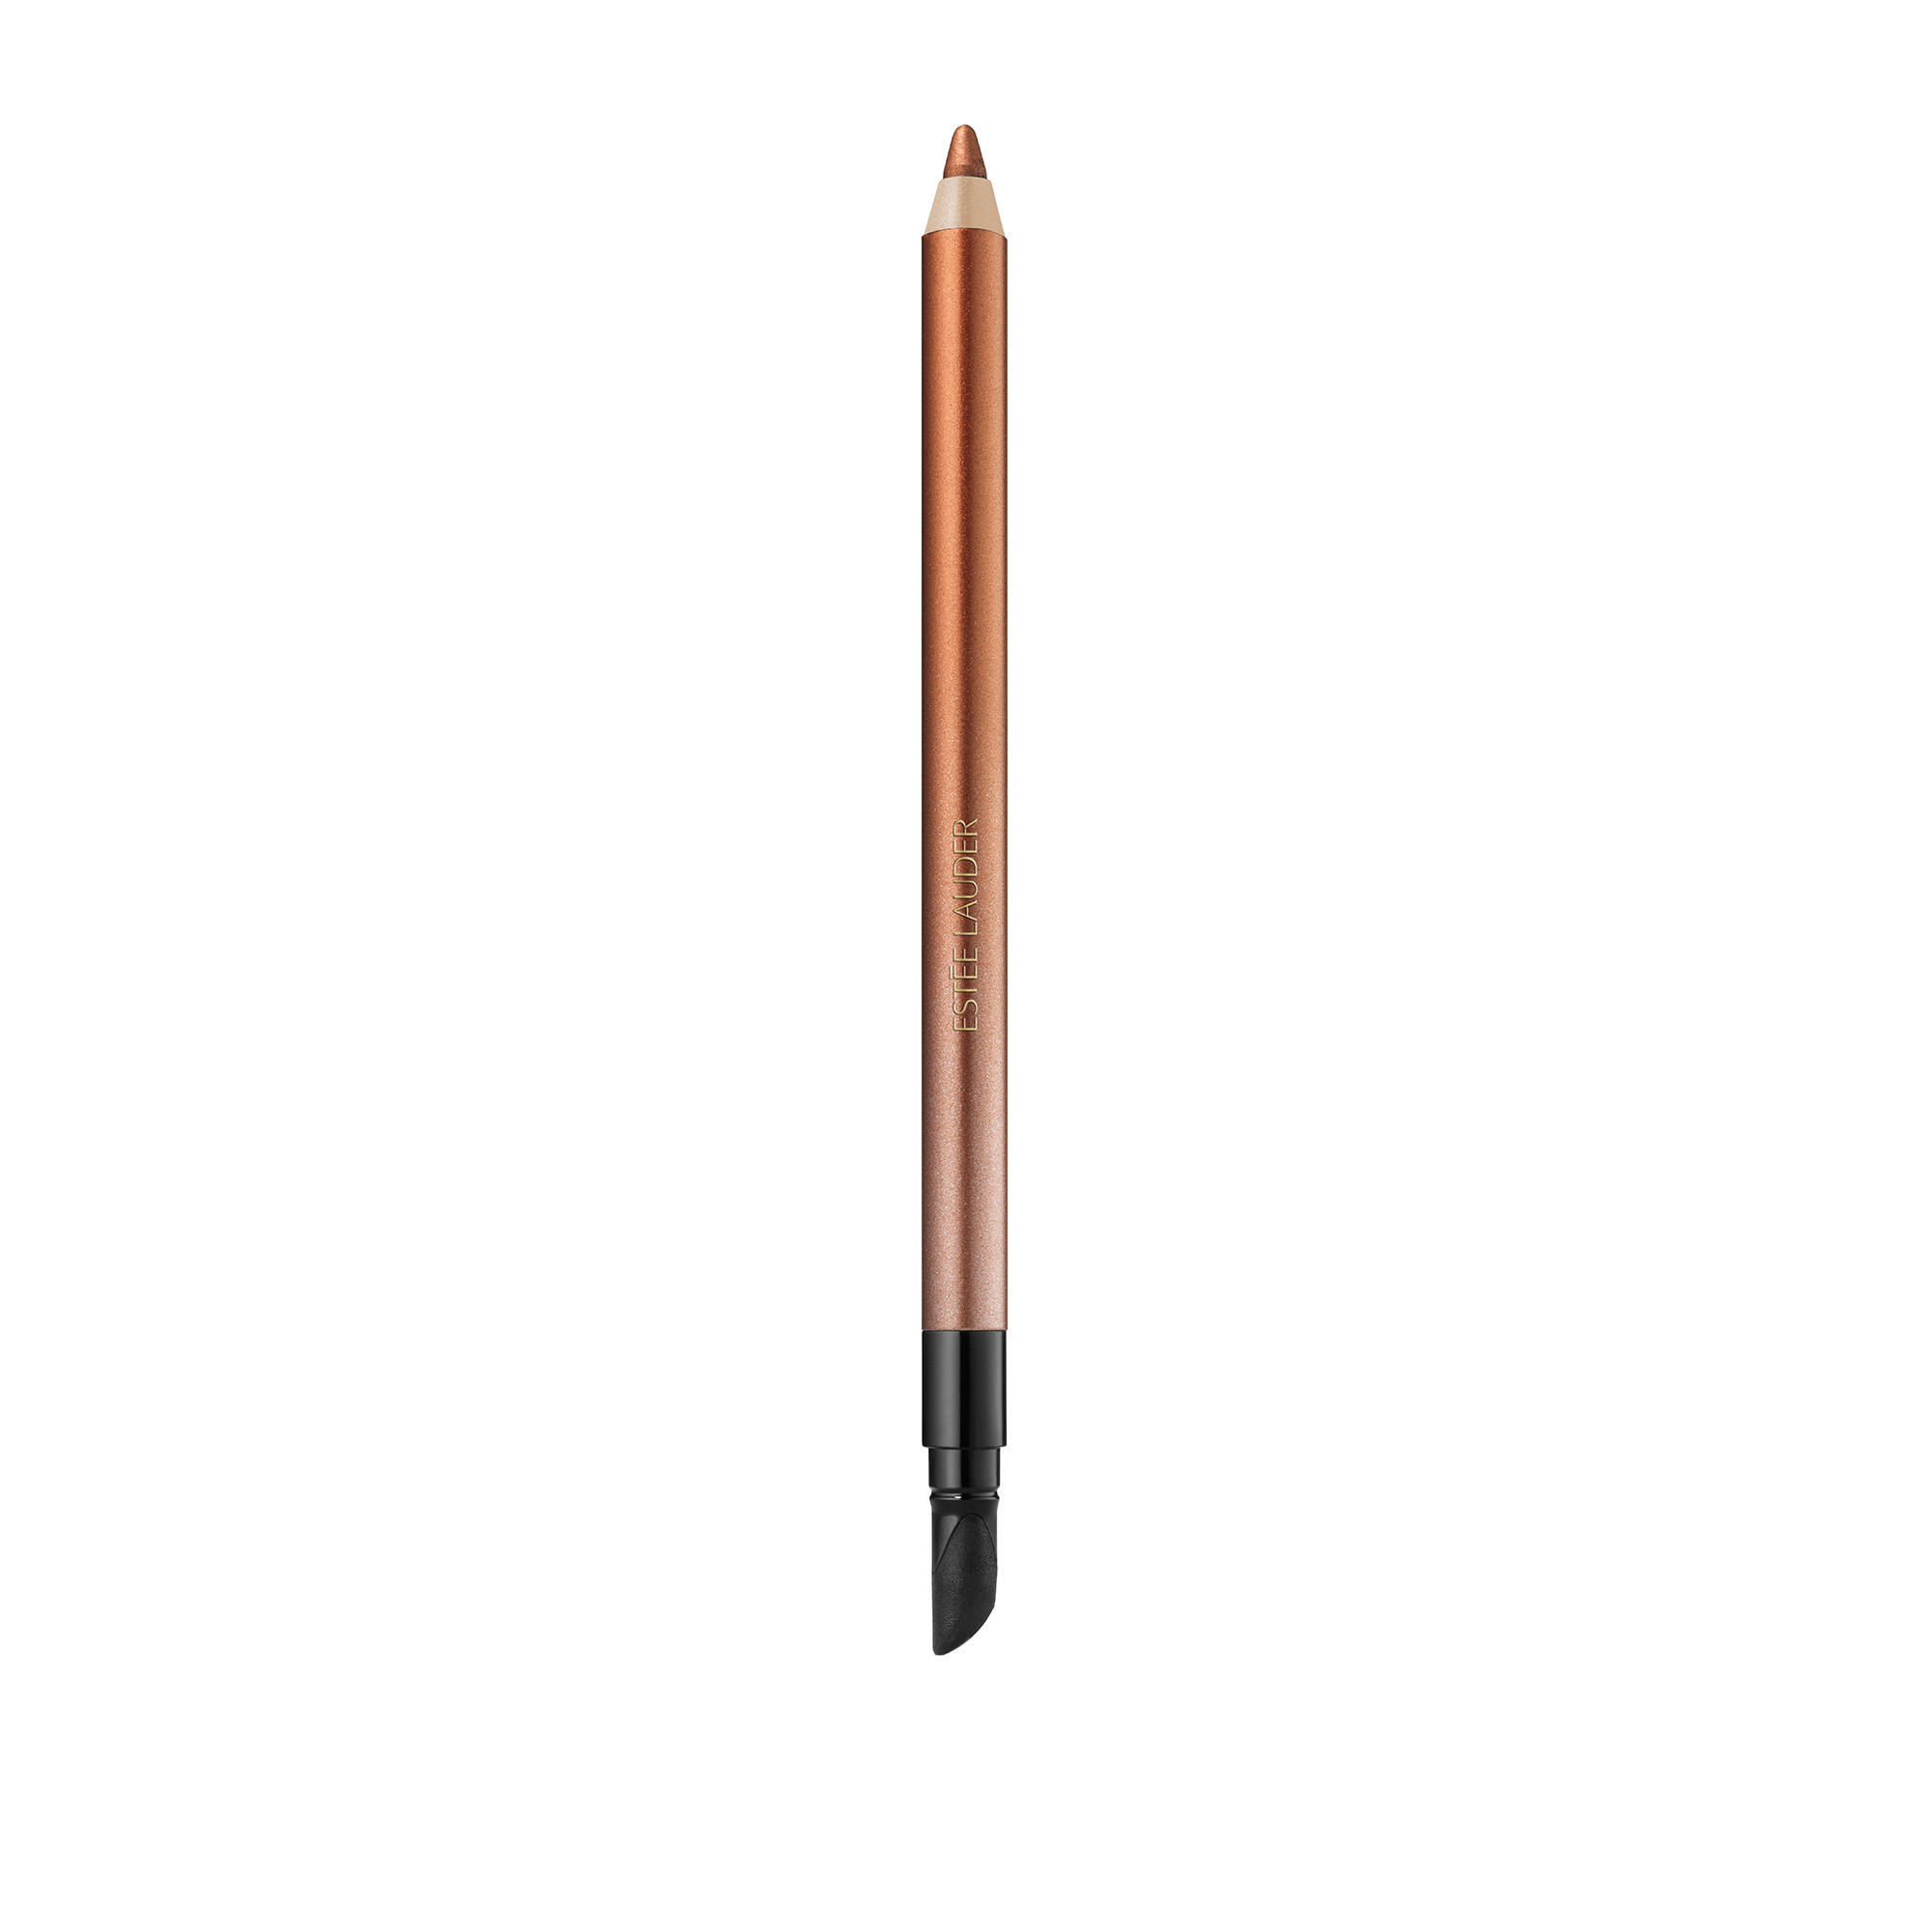 Double wear 24h waterproof gel eye pencil - 11 Bronze, Brown, large image number 0